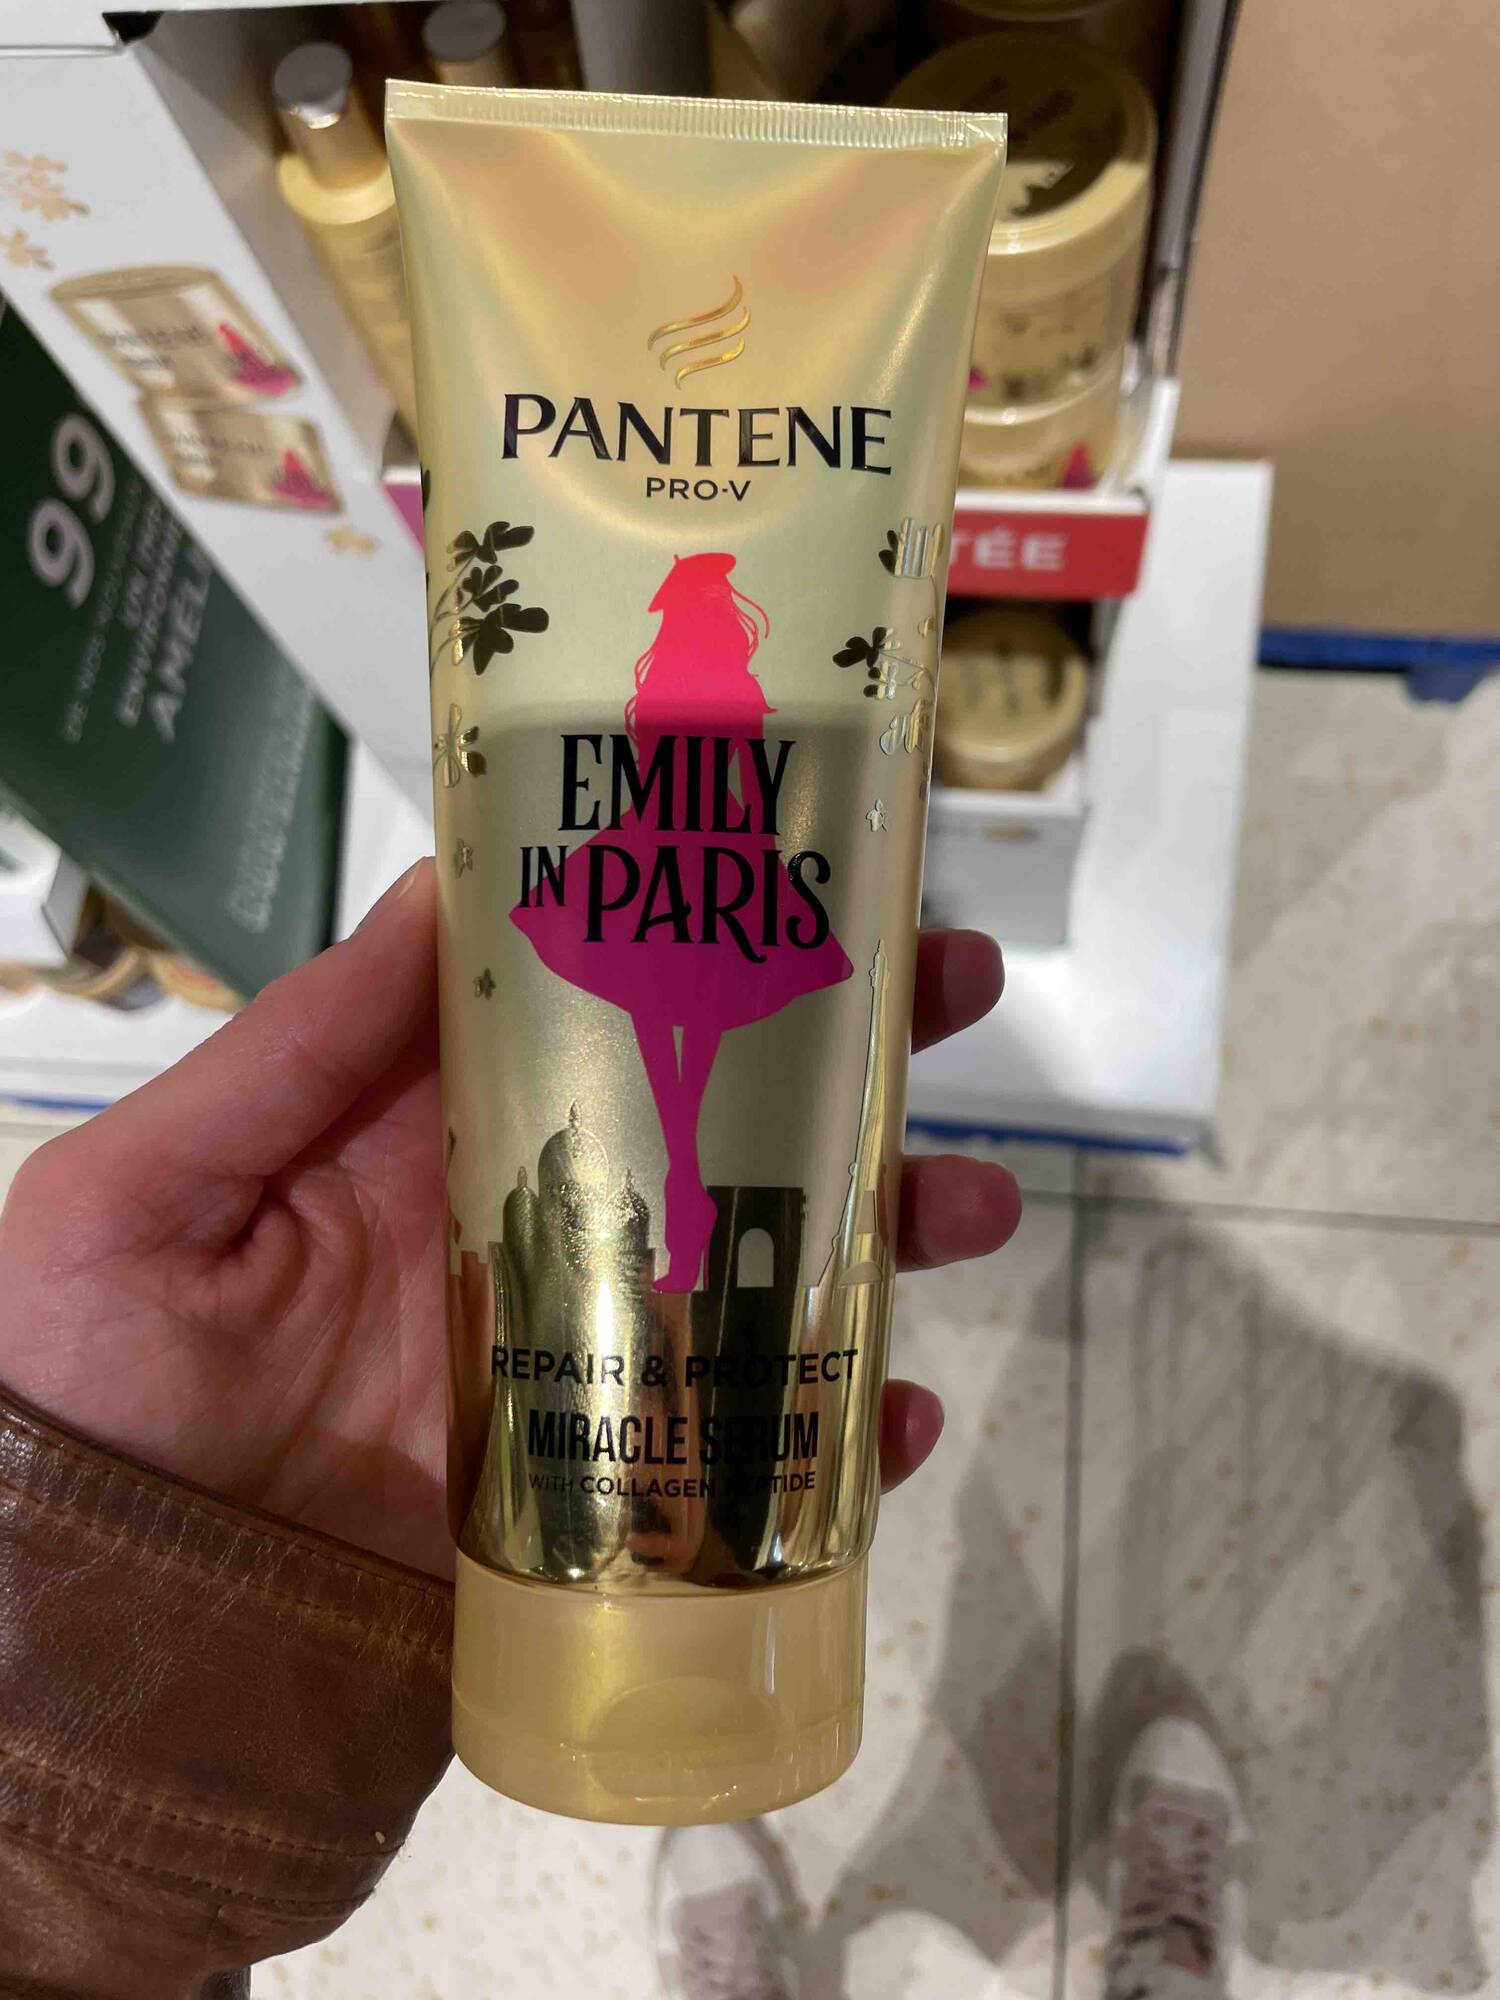 PANTENE PRO-V - Emily in Paris - Miracle serum 